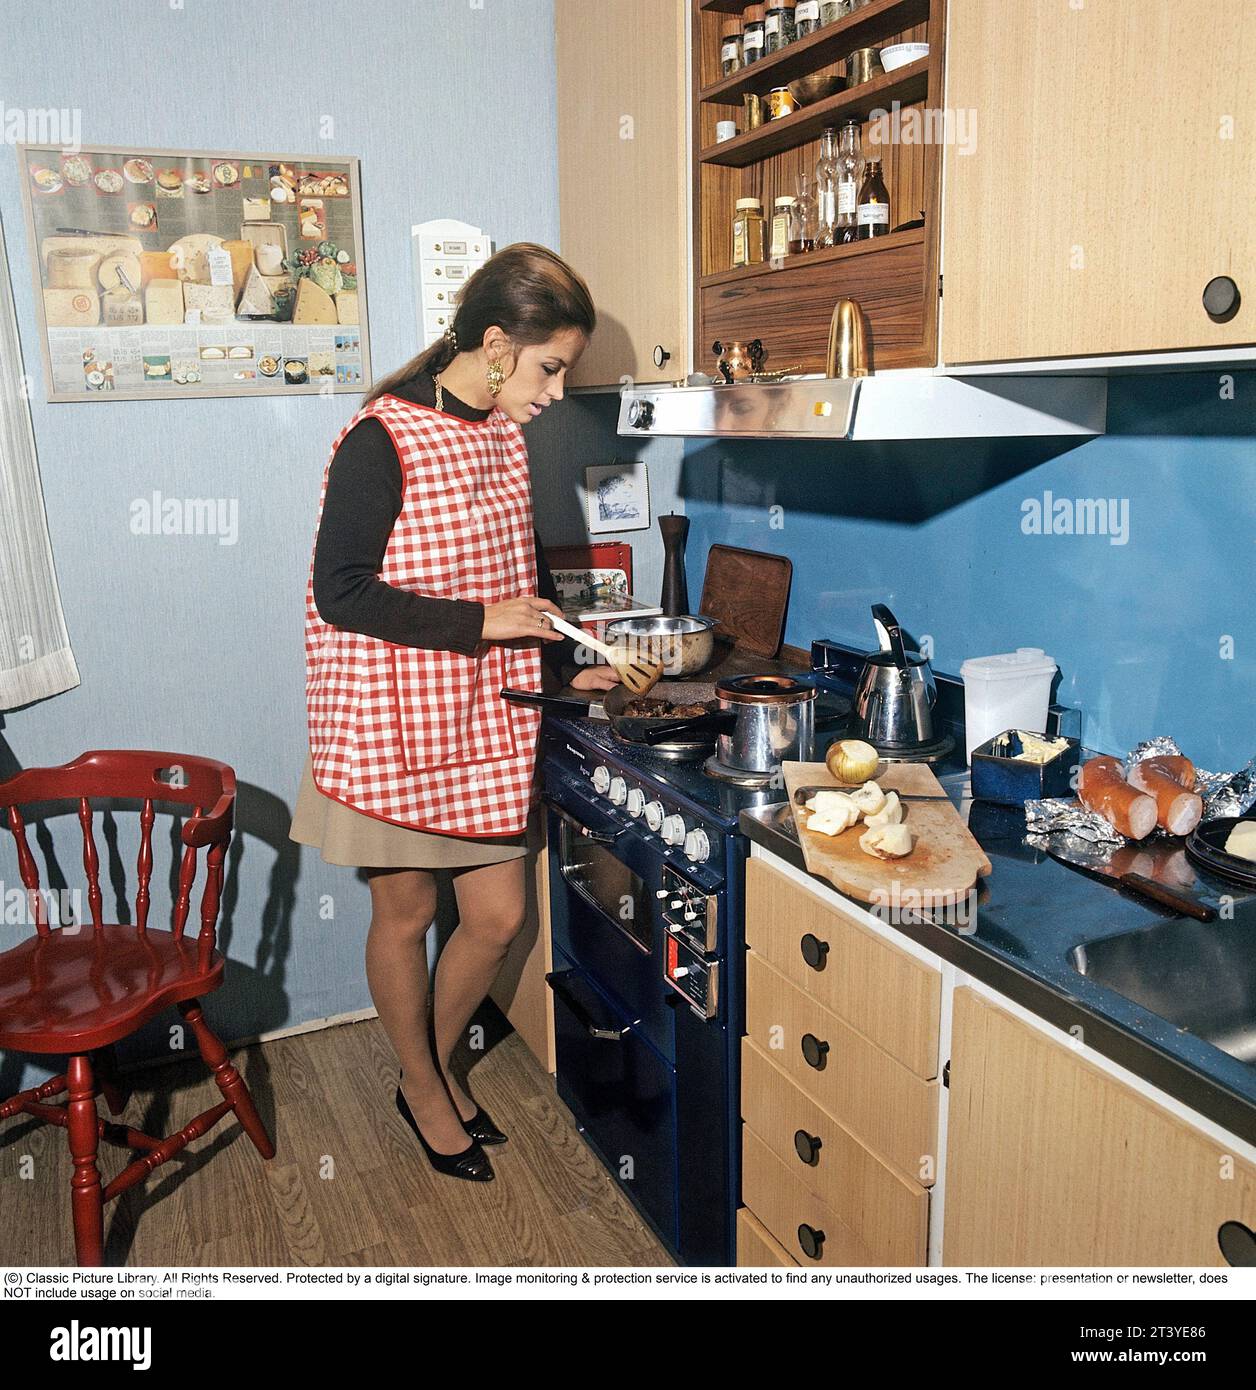 In der Küche 1970er Jahre Schauspielerin und Sängerin Lill-Babs Svensson, die in der typischen Küche der 70er Jahre eine Mahlzeit kocht. Schweden 1972. Kristoffersson Stockfoto